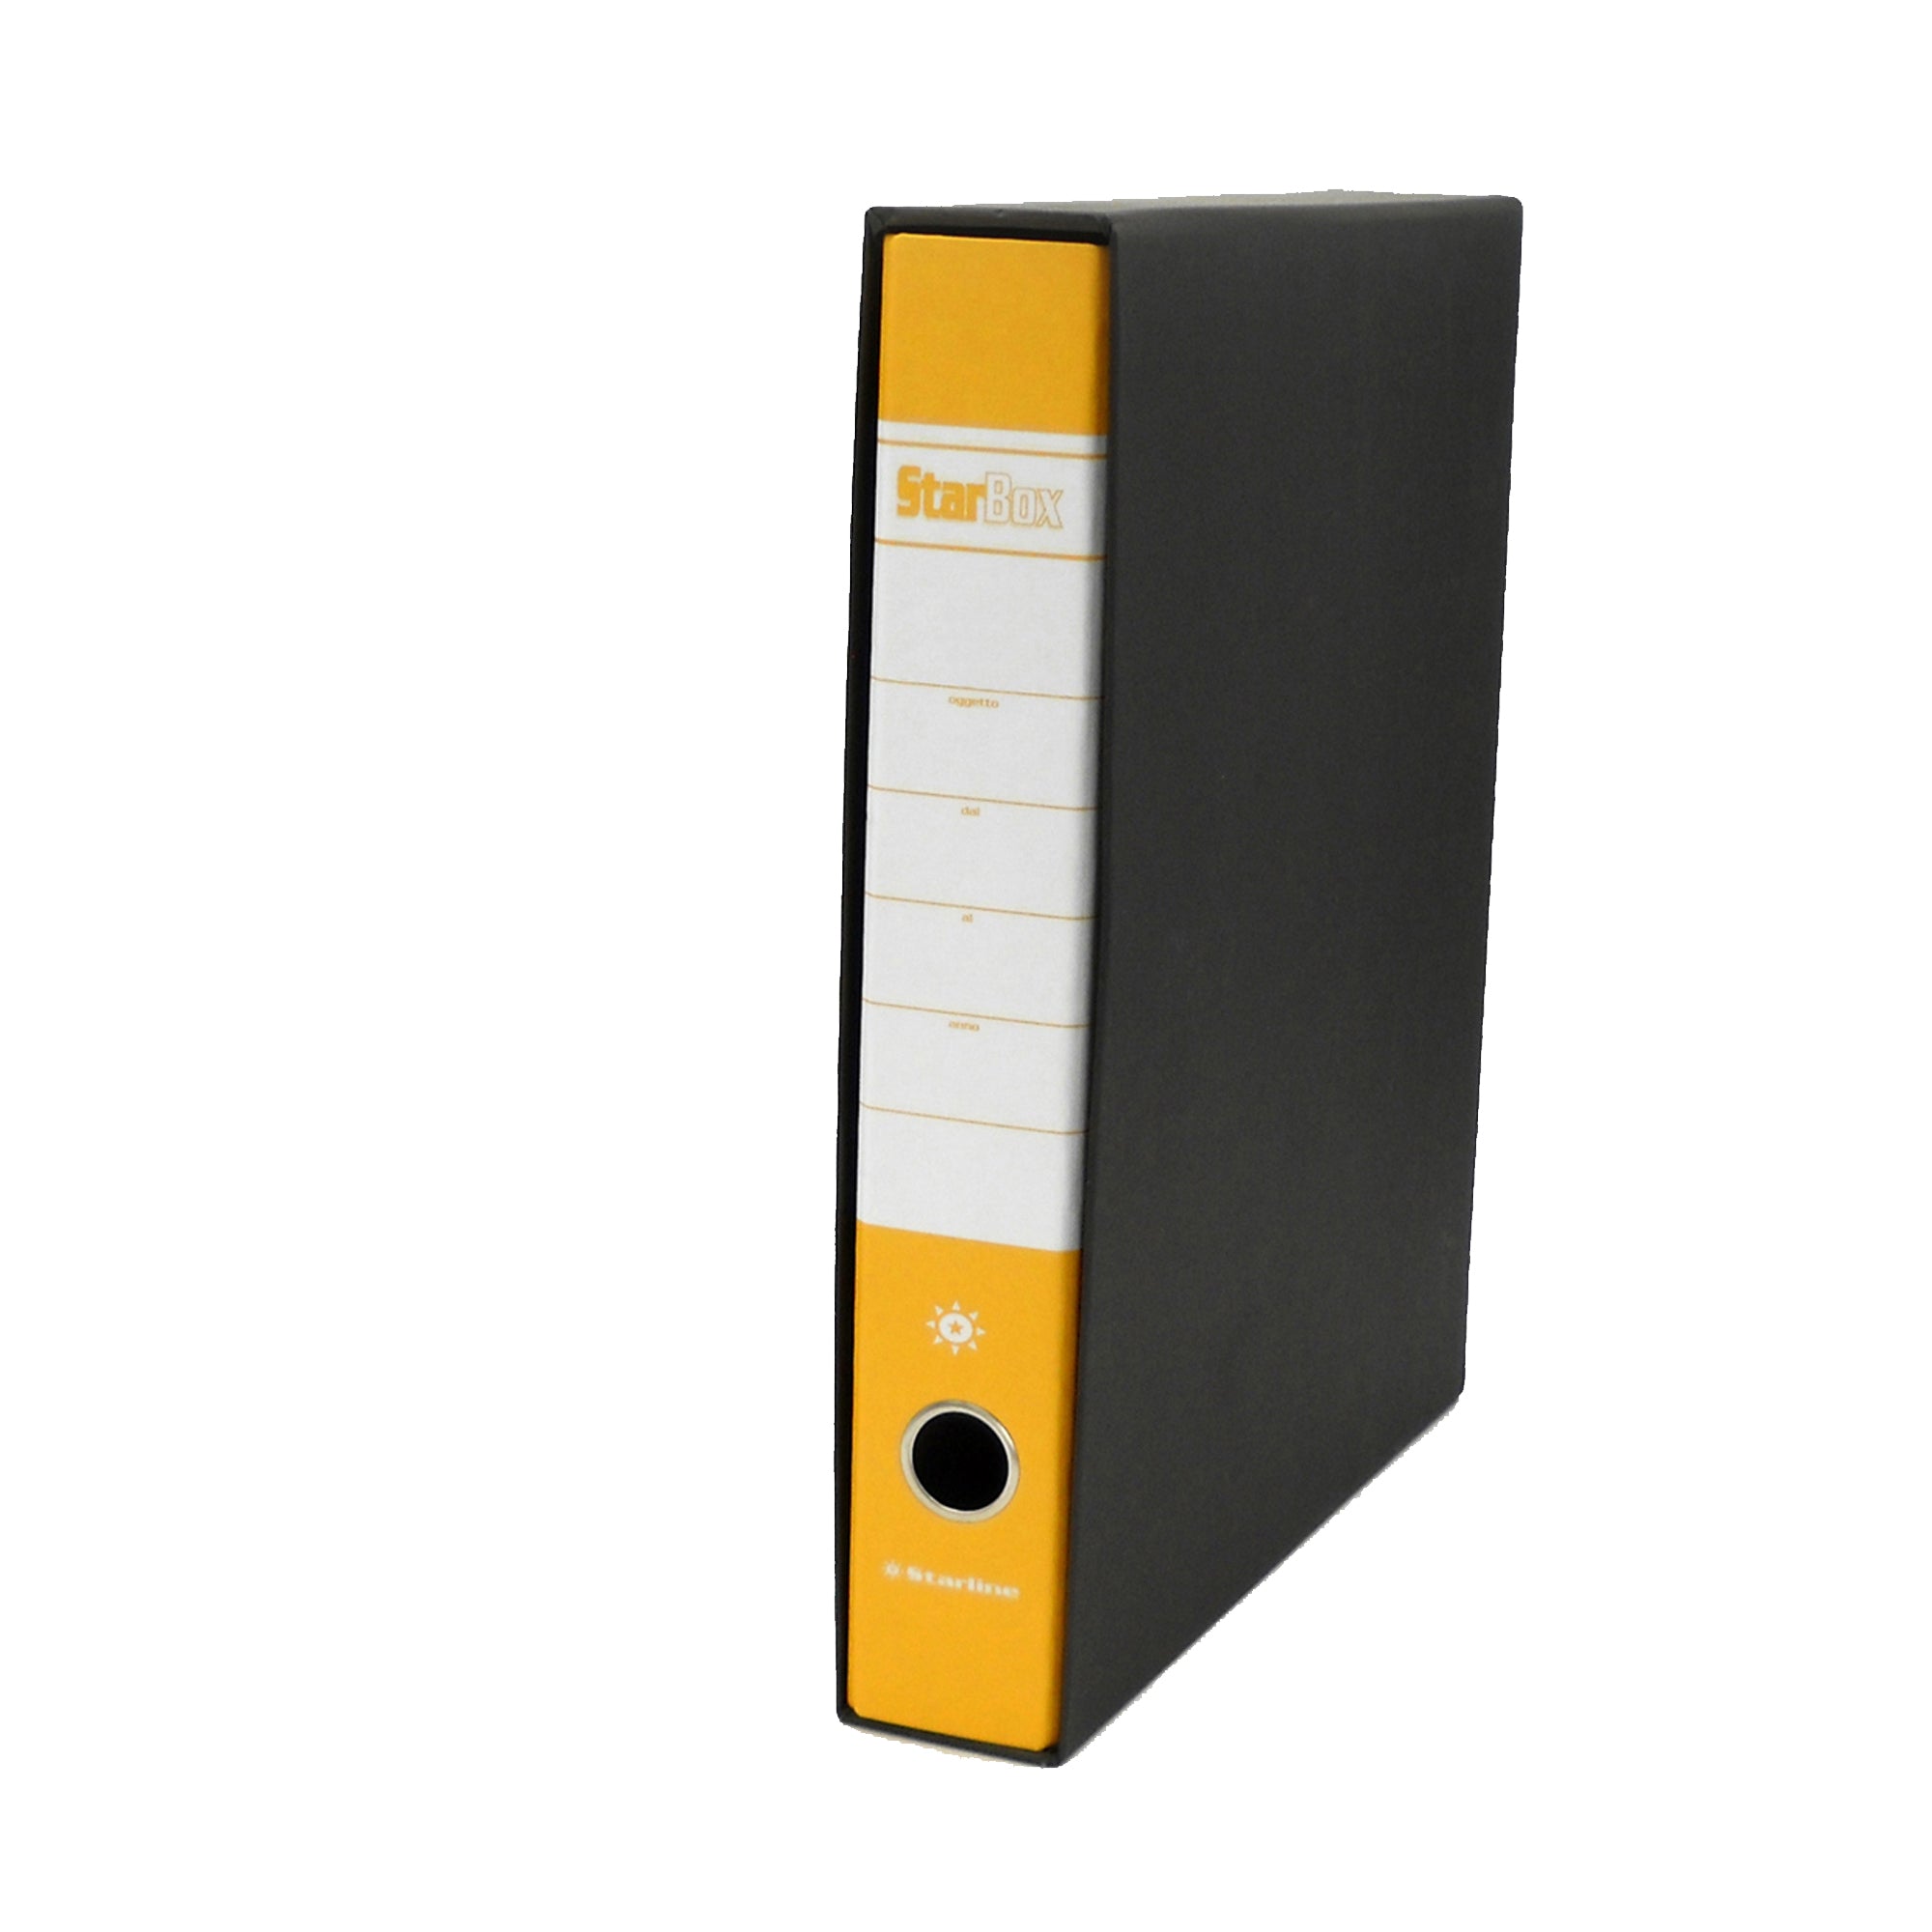 starline-registratore-starbox-f-to-protocollo-dorso-5cm-giallo